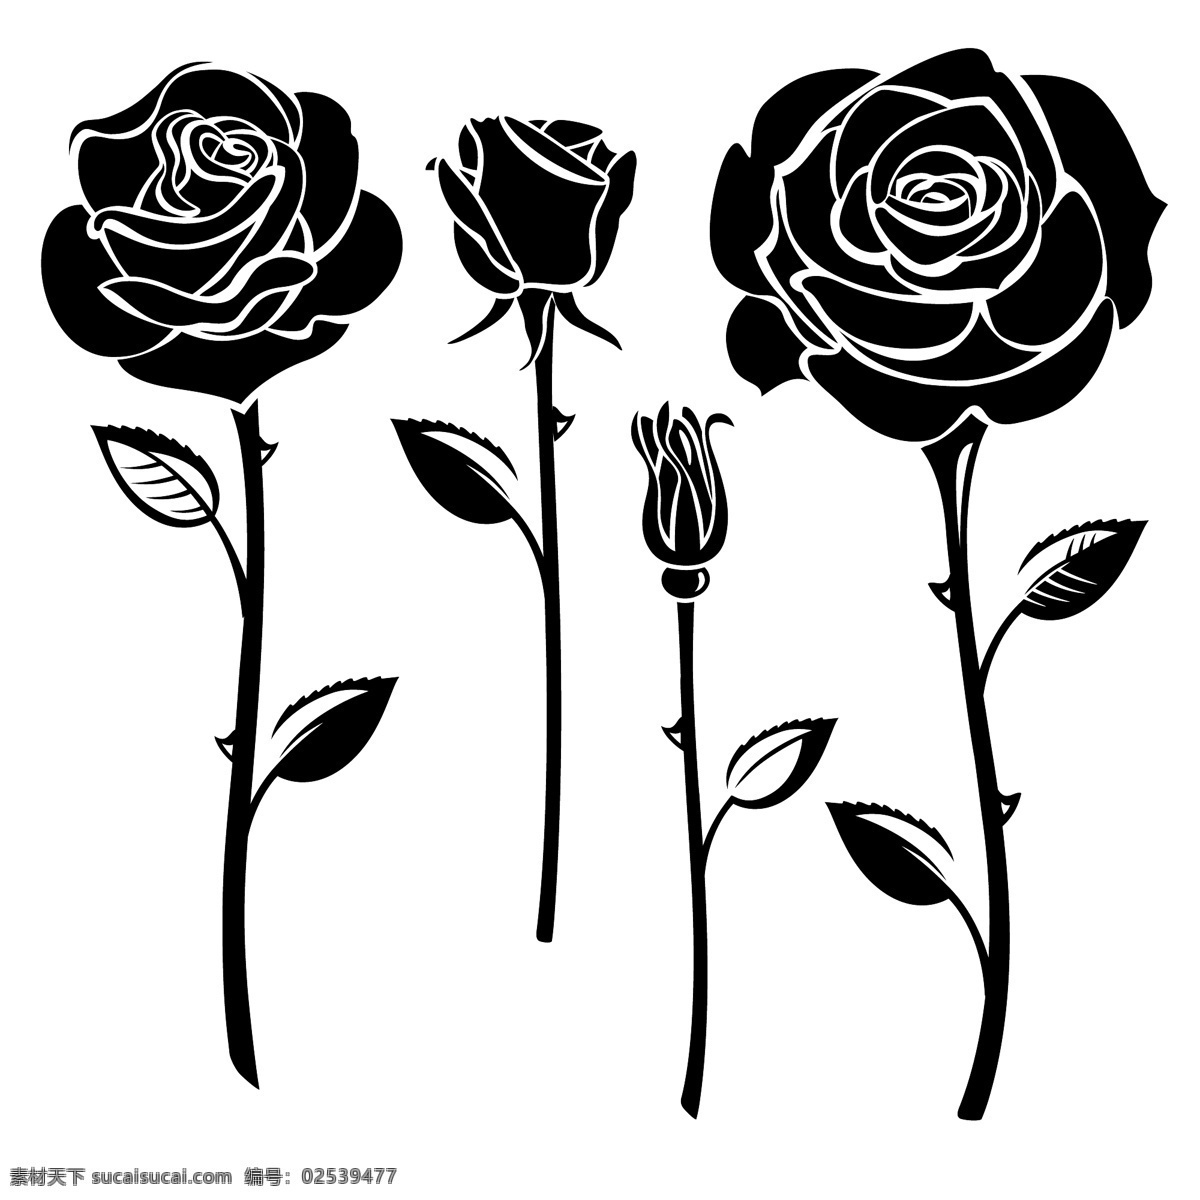 黑白 时尚 玫瑰花 插画 花卉 手绘 植物